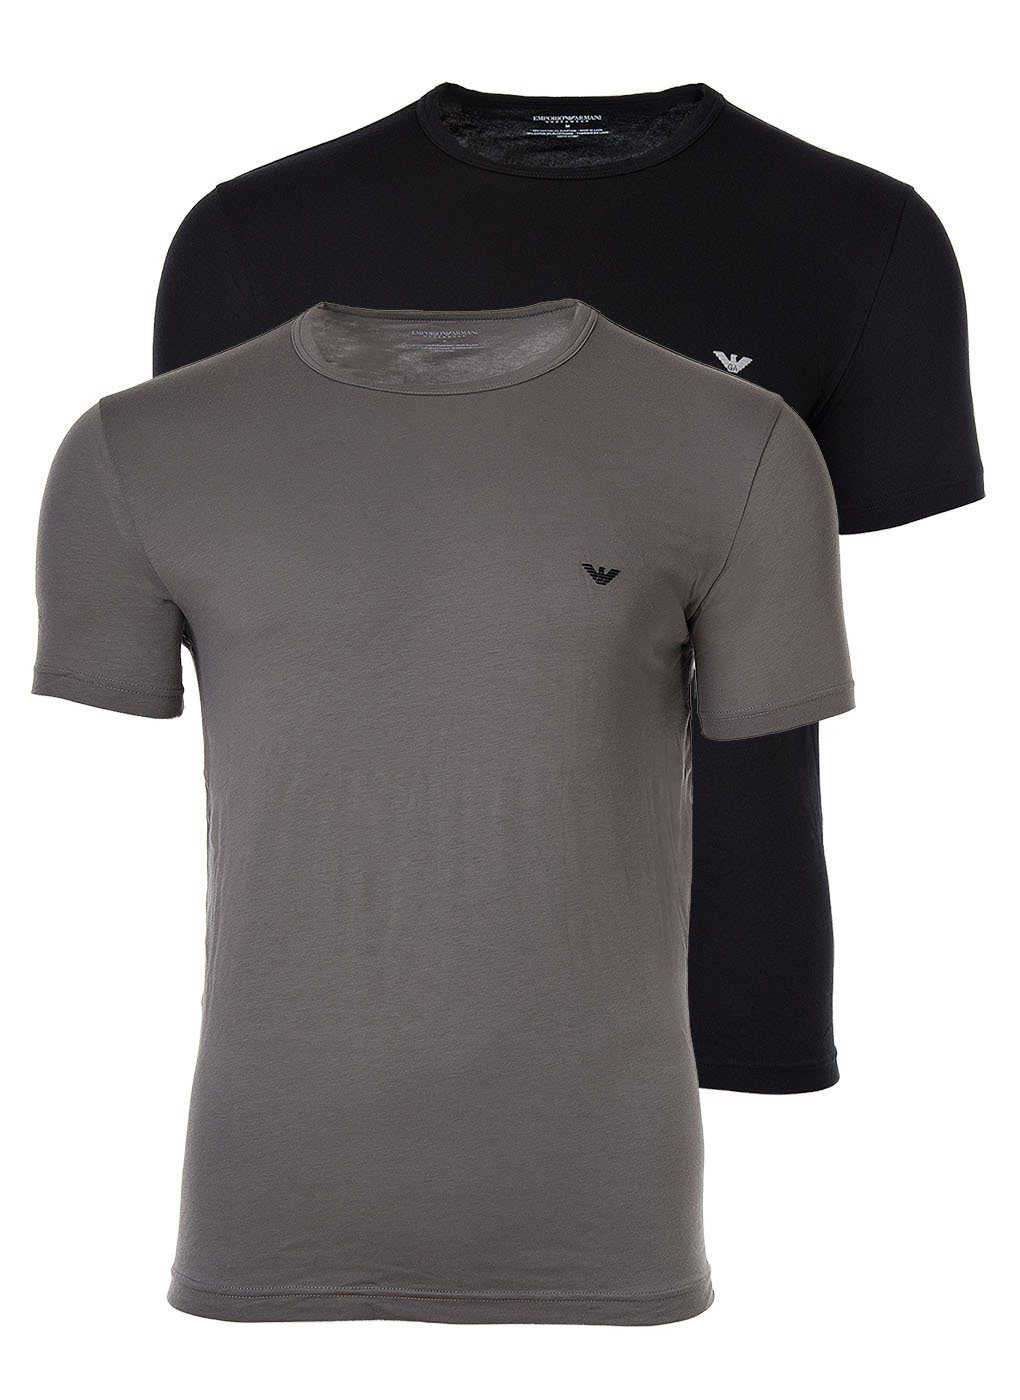 Emporio Armani T-Shirt Herren T-Shirt 2er Pack - Crew Neck, Rundhals schwarz/grau